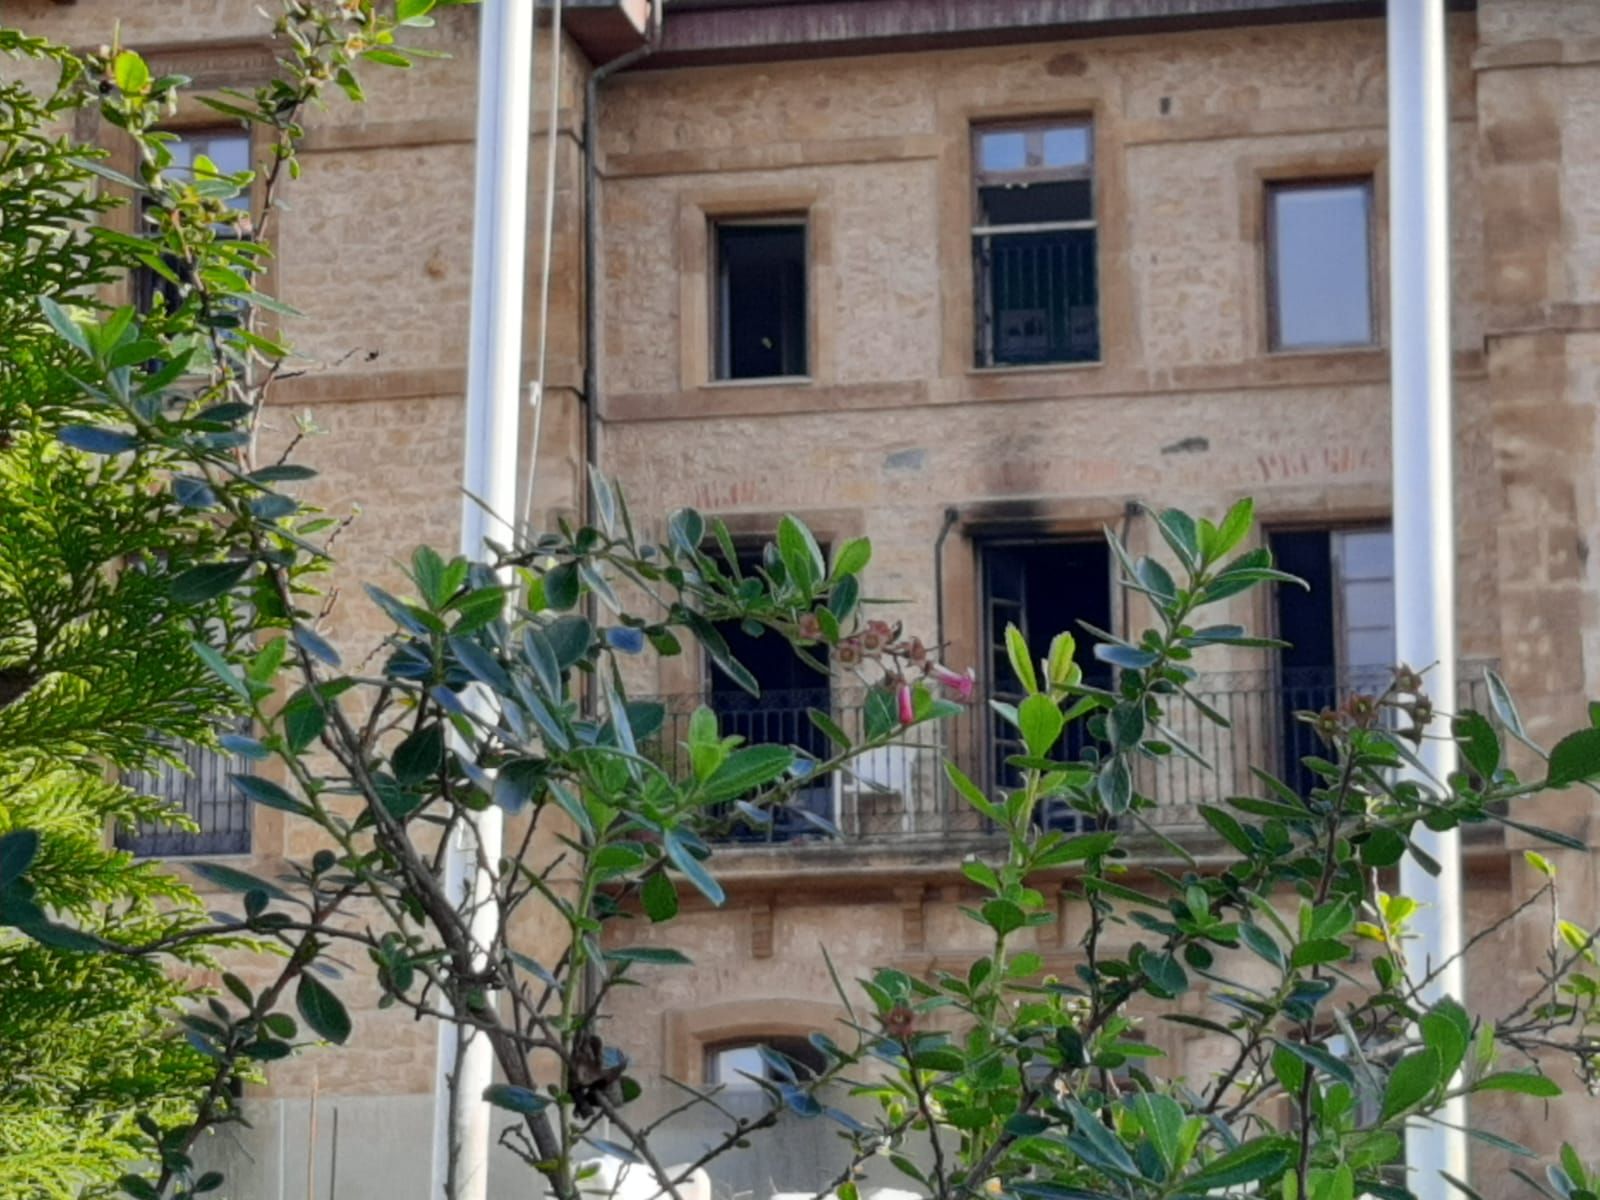 Tragedia en Valdesoto: las imágenes de la mañana tras el incendio de la residencia de Leceñes